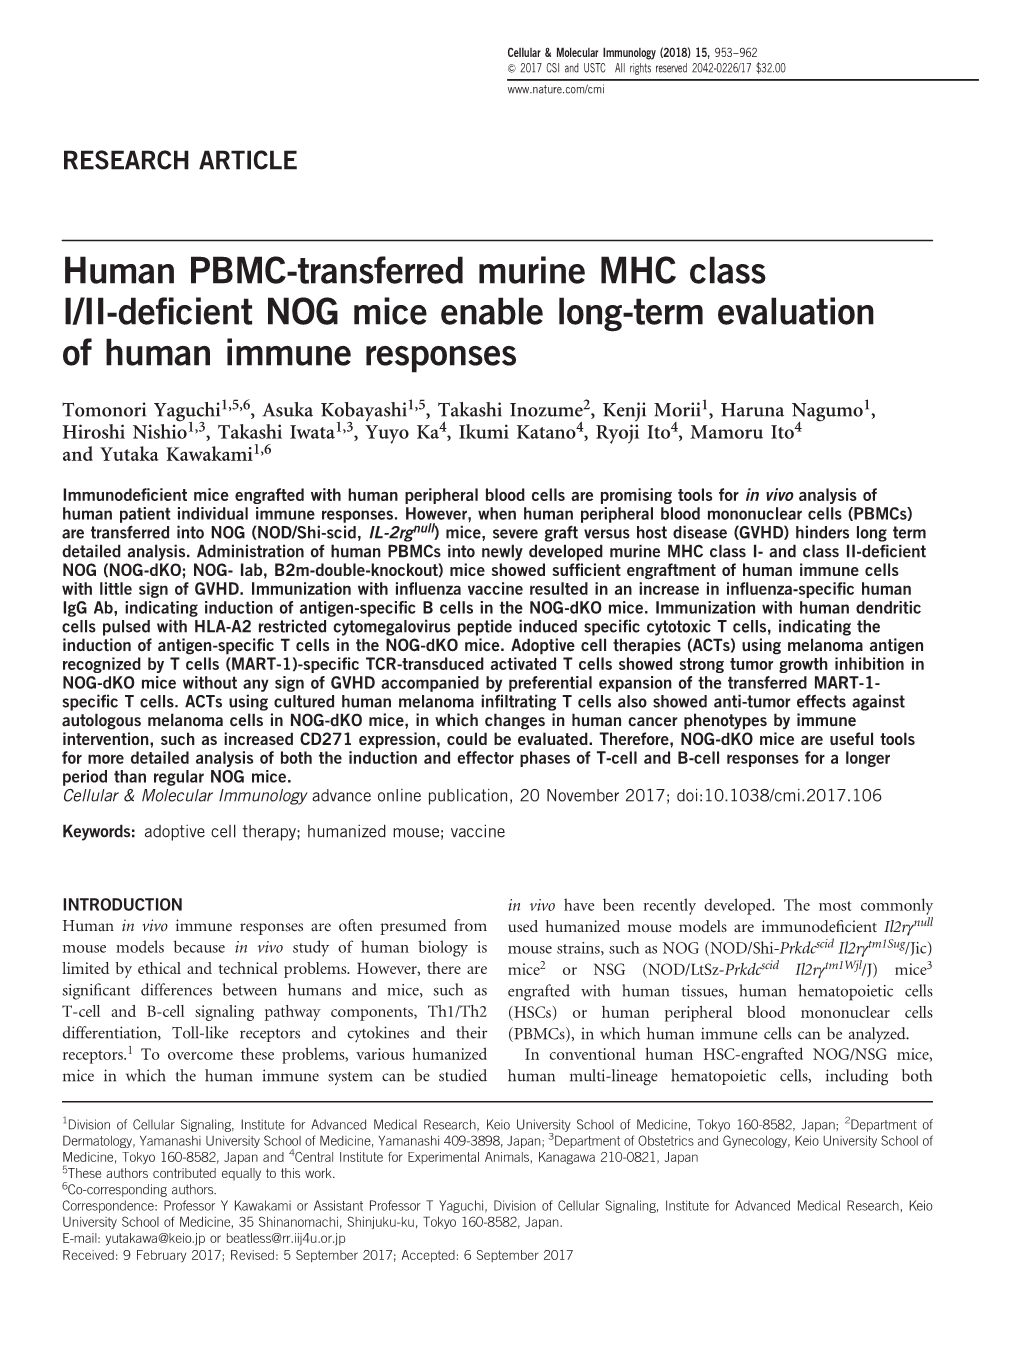 Human PBMC-Transferred Murine MHC Class I/II-Deficient NOG Mice